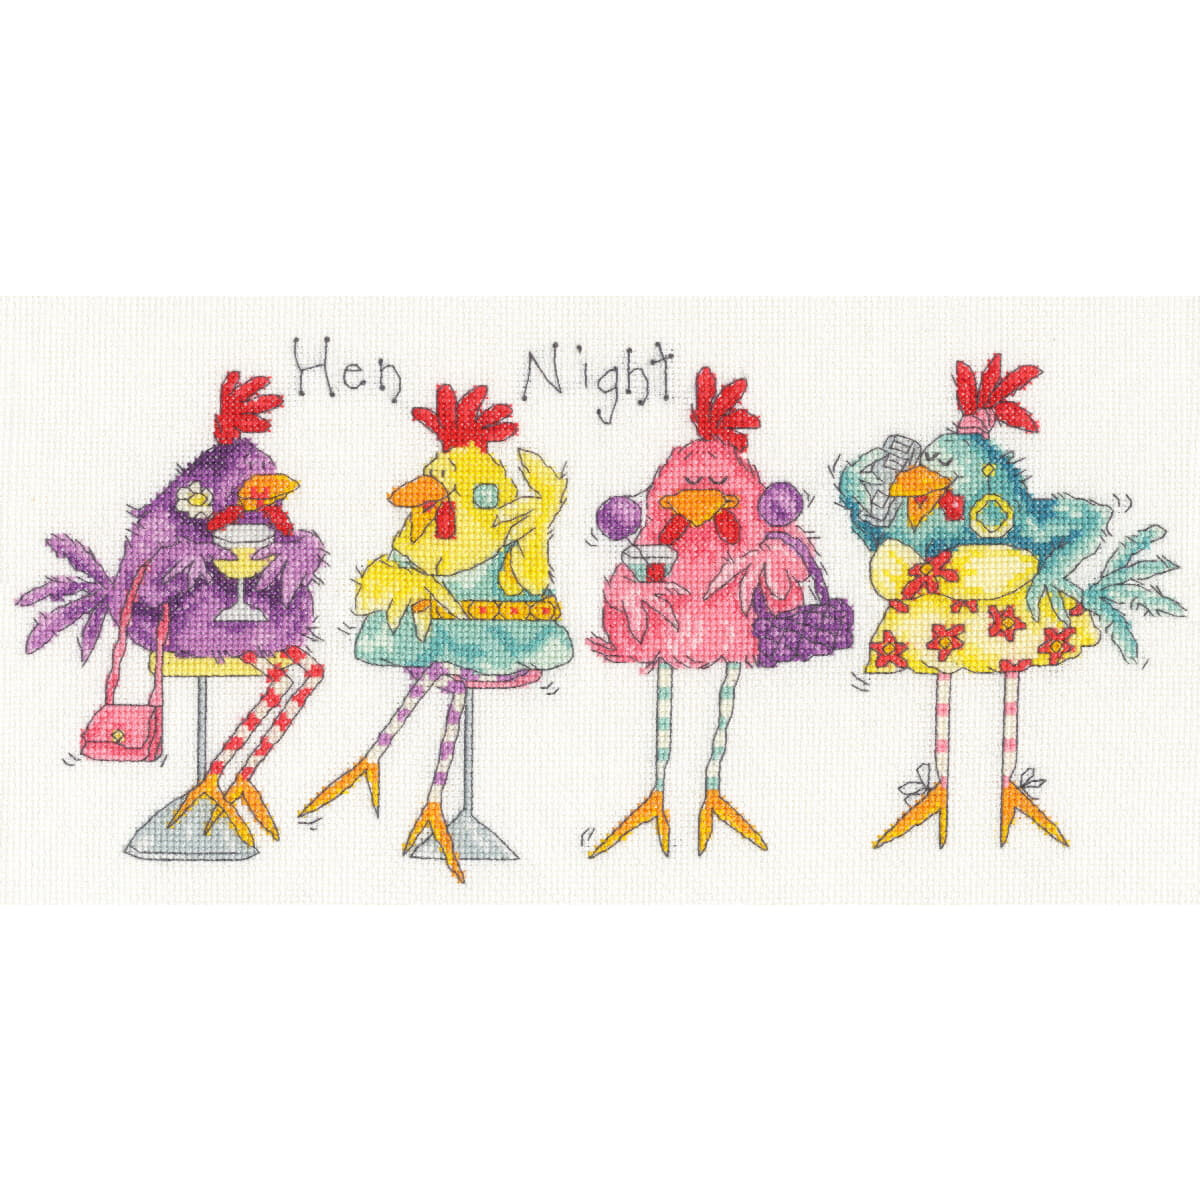 Четыре комичные курицы изображены в красочных нарядах для...